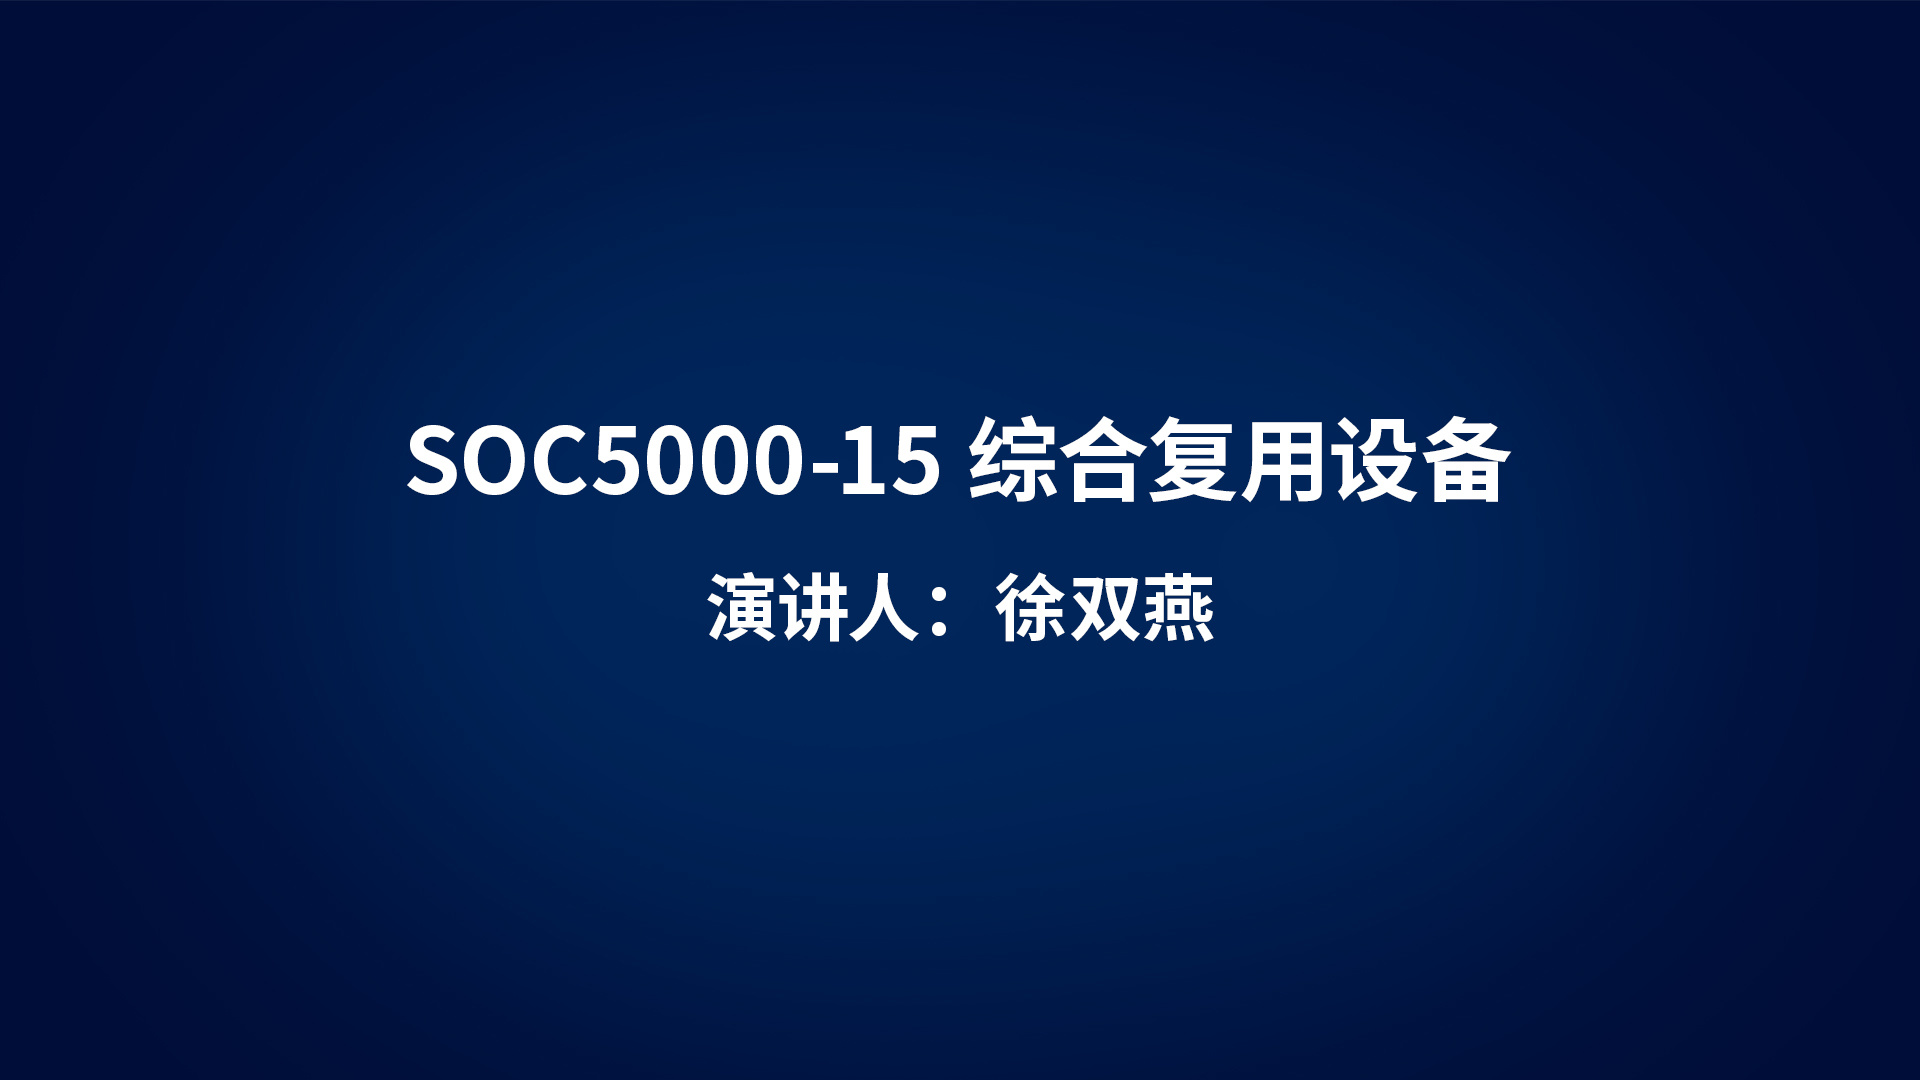 SOC5000-15综合复用设备产品介绍